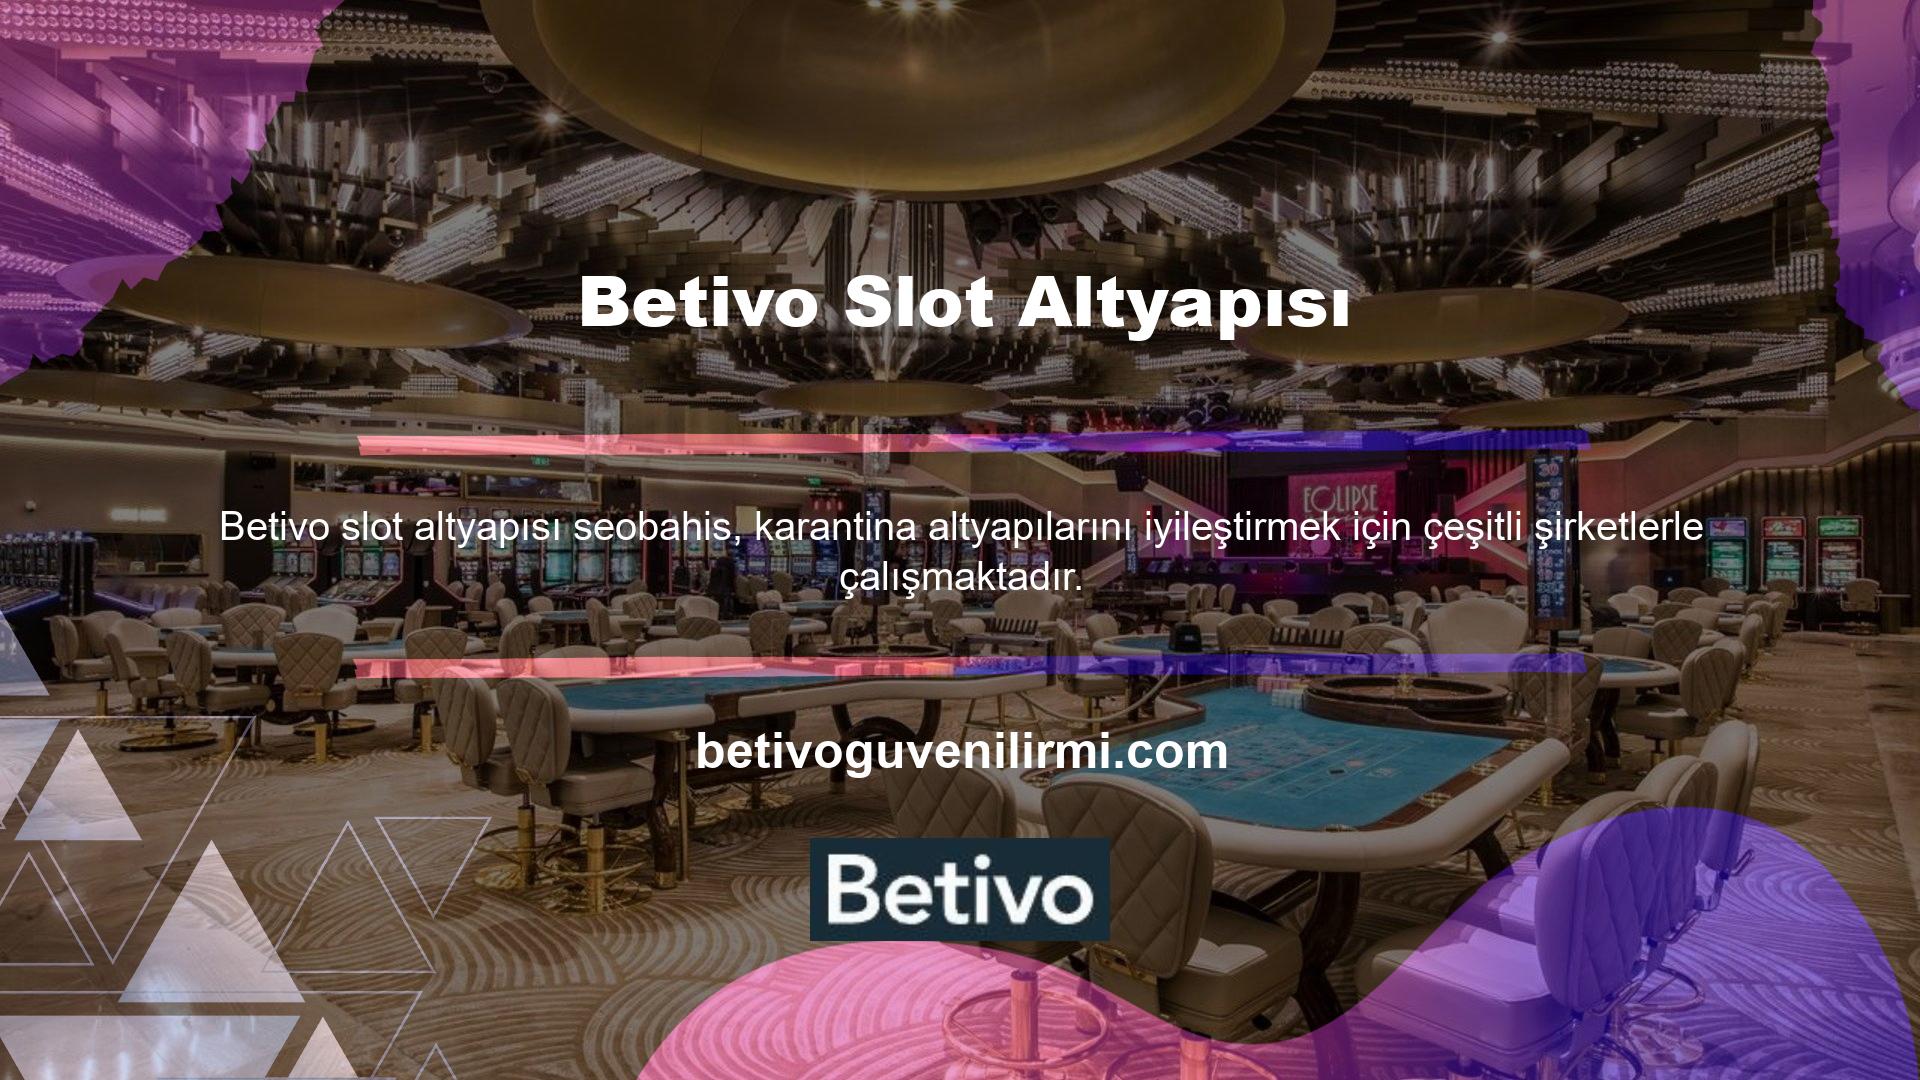 Betivo Slot Altyapısı canlı bahis sitelerini işleten lider bir şirkettir